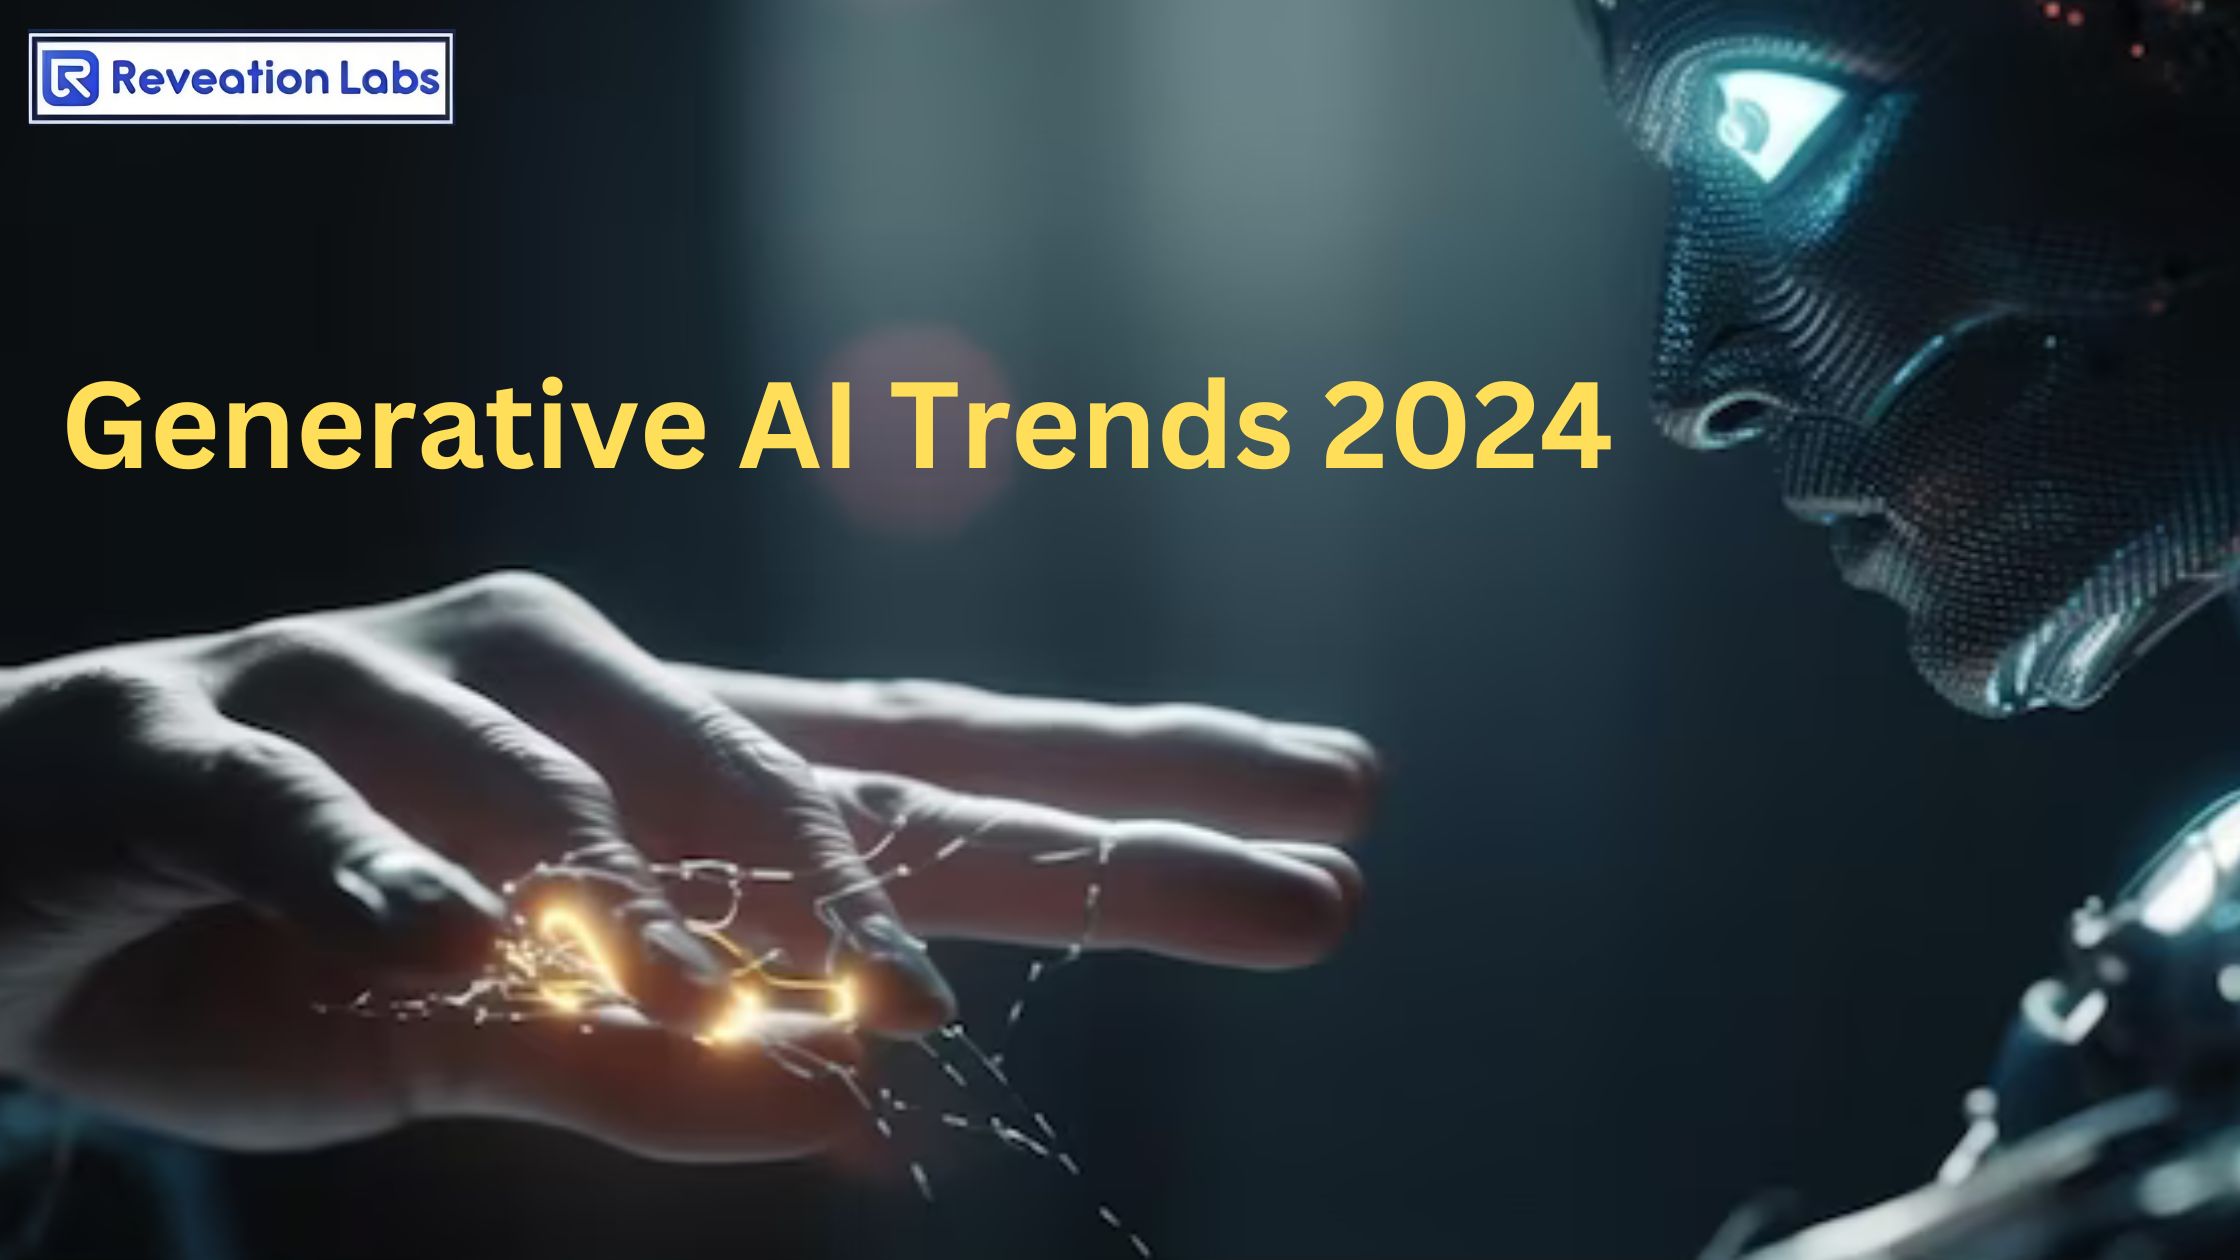 Top Generative AI Trends in 2024